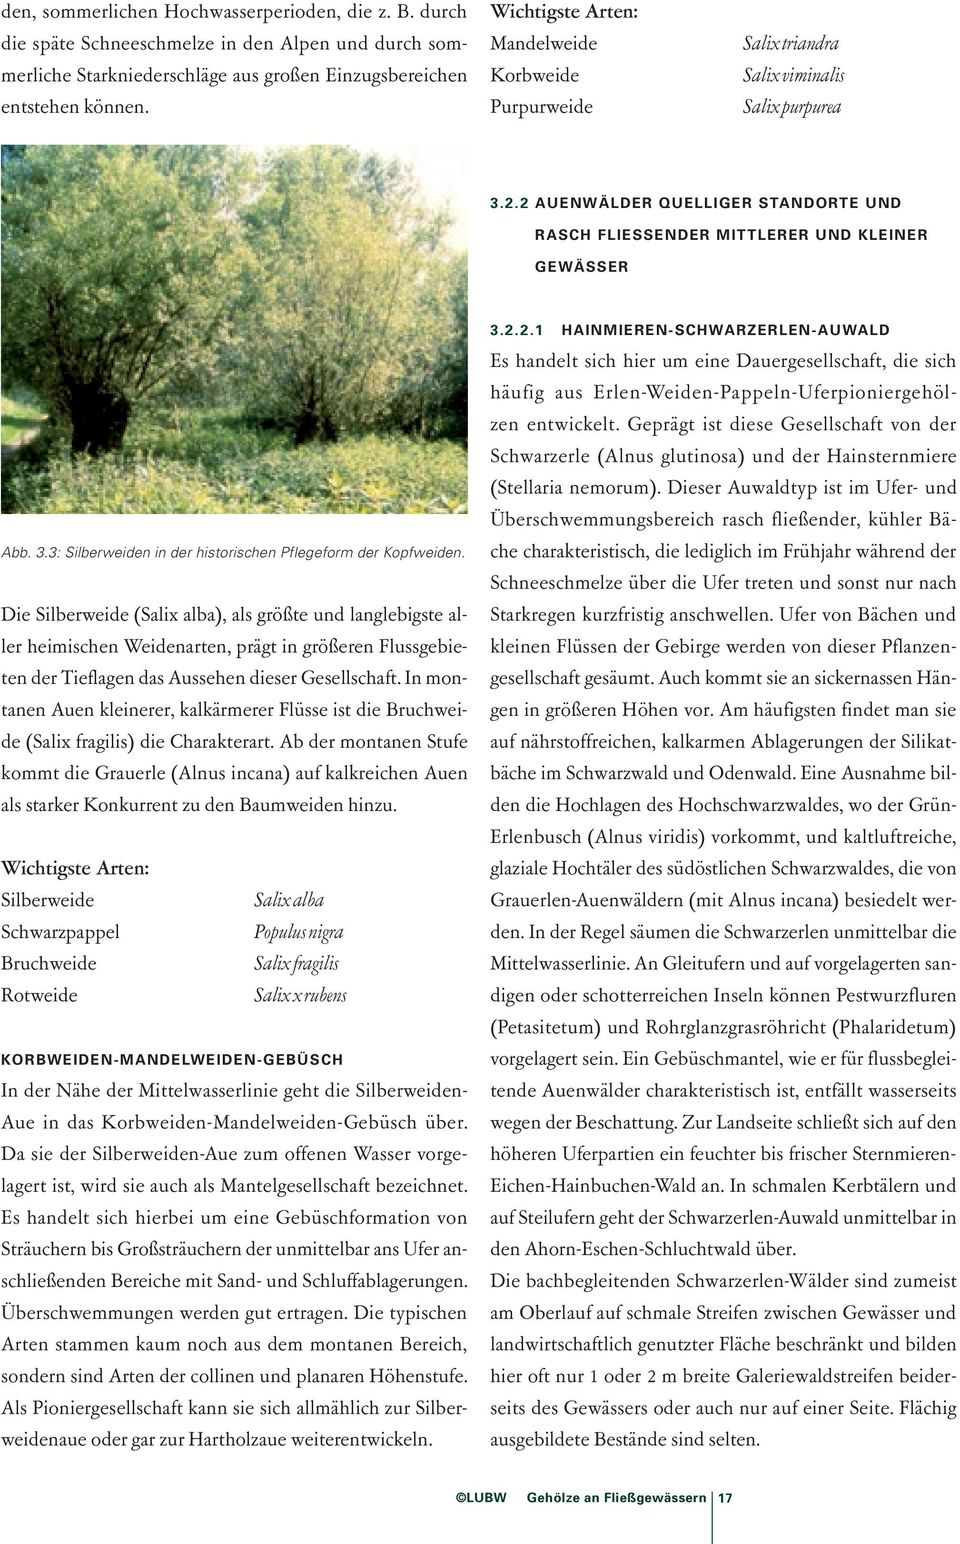 Die Silberweide (Salix alba), als größte und langlebigste aller heimischen Weidenarten, prägt in größeren Flussgebieten der Tieflagen das Aussehen dieser Gesellschaft.